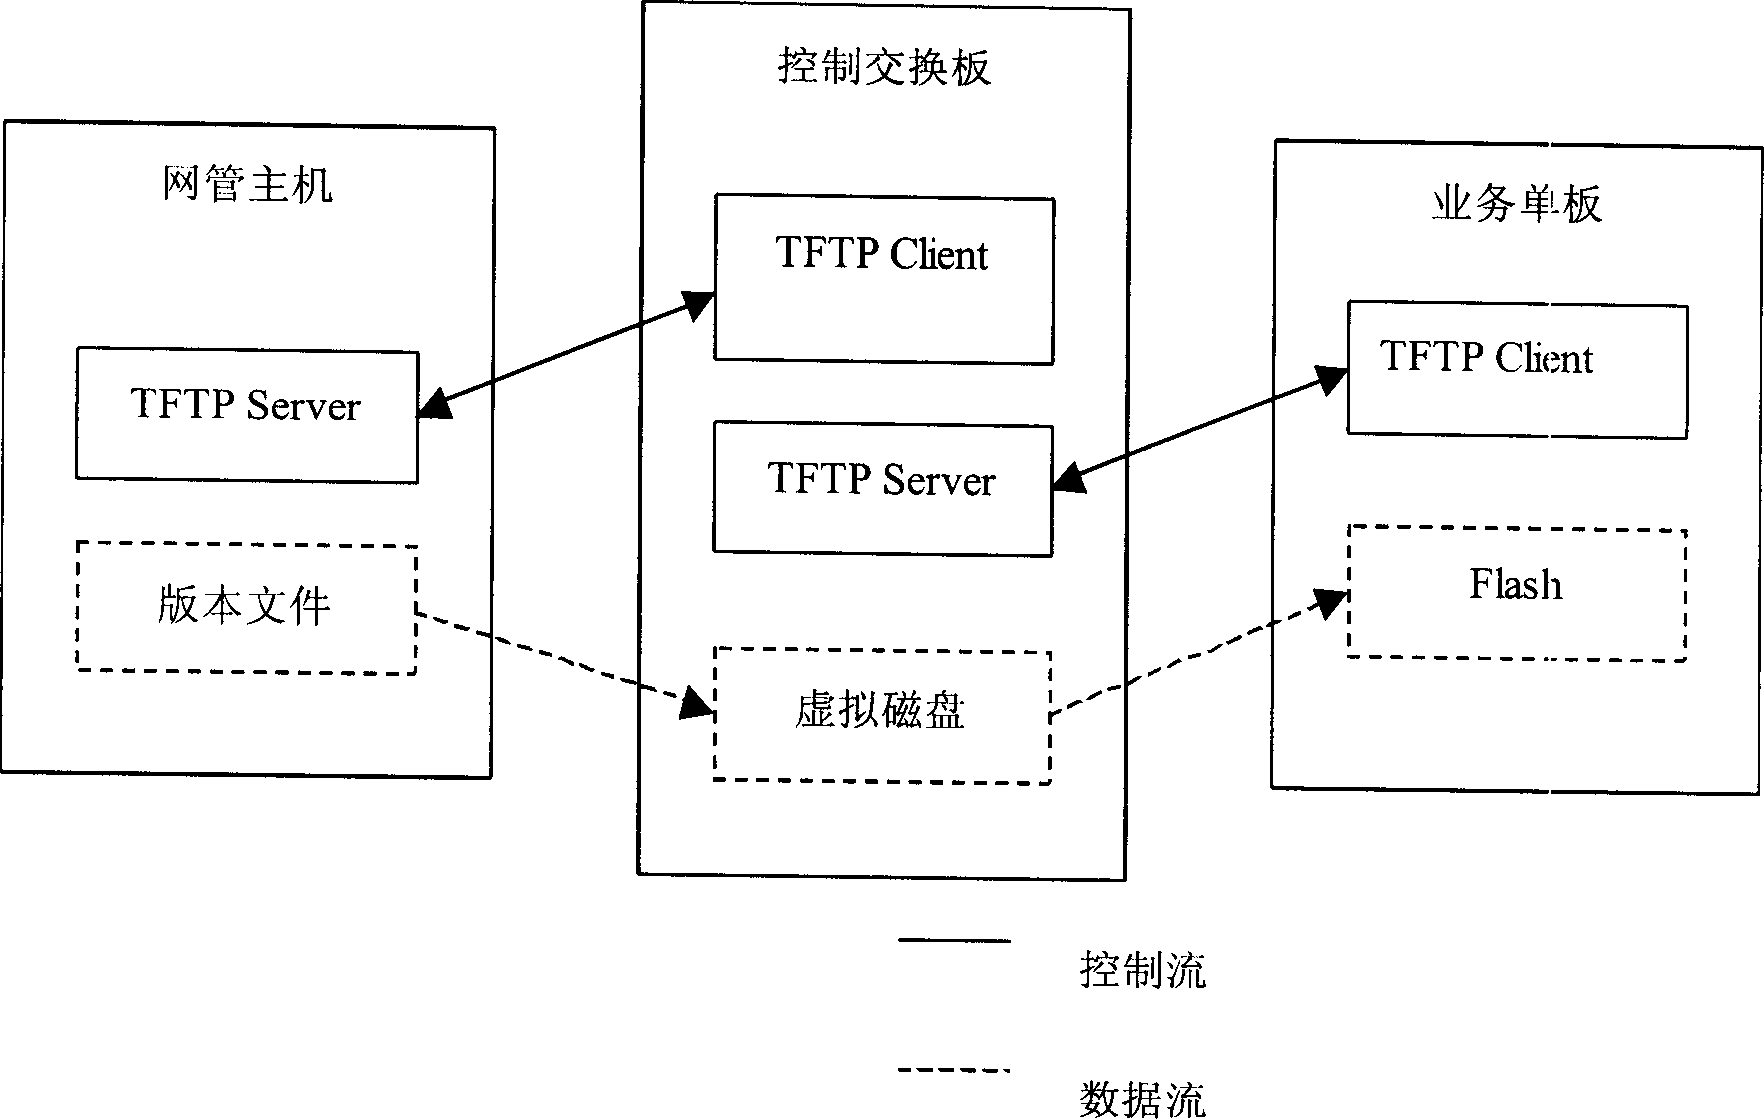 Remote file transmission method